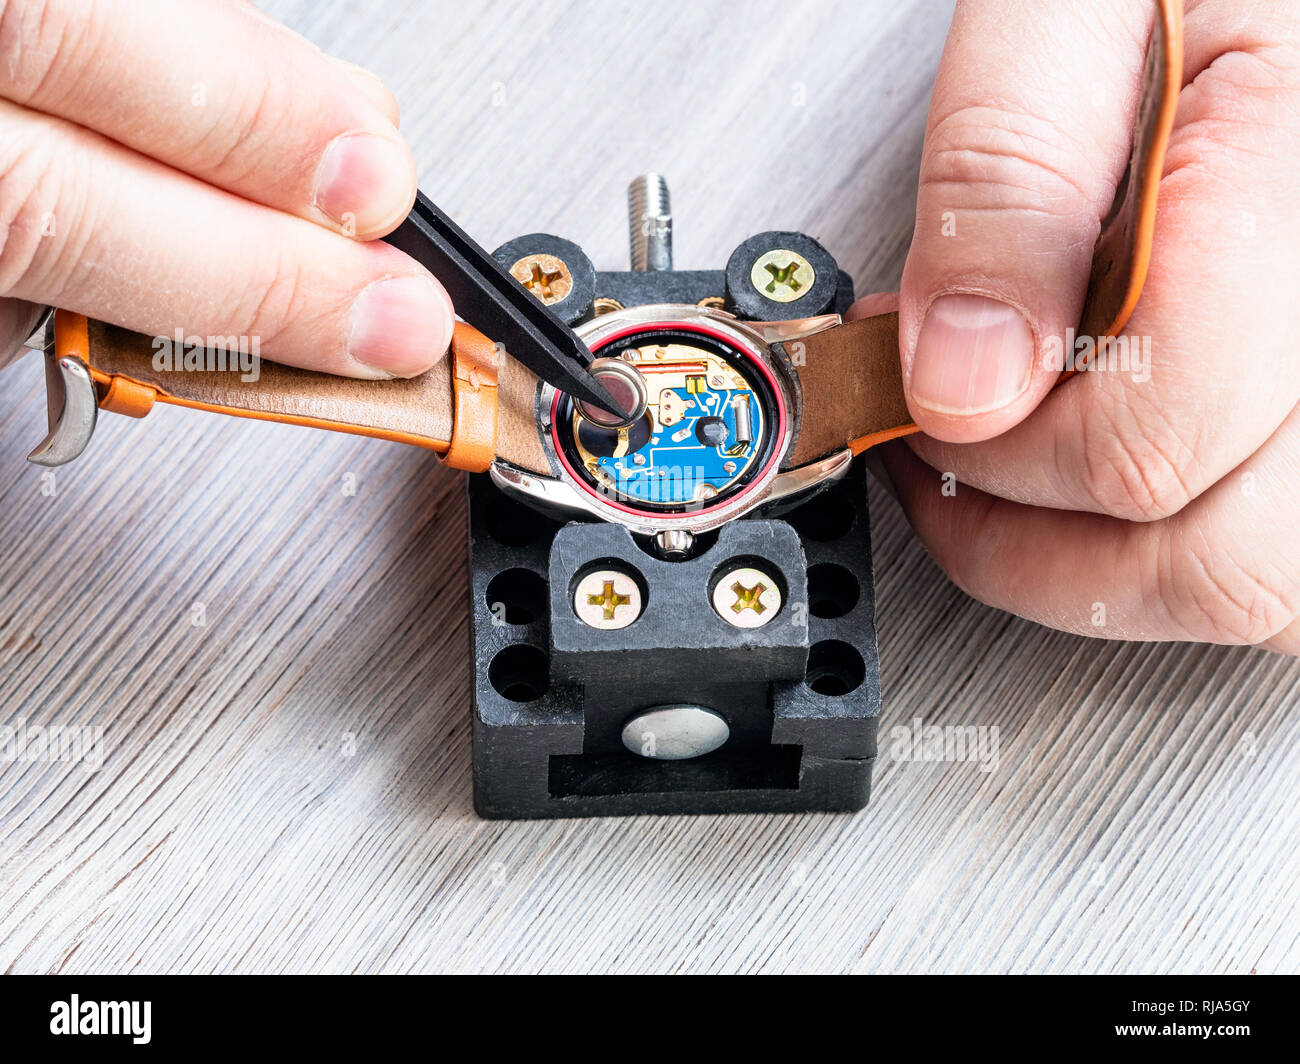 Atelier de réparateur watch - vue avant d'horloger du remplacement de la batterie dans la montre-bracelet à quartz avec des pinces en plastique sur la table en bois close up Banque D'Images